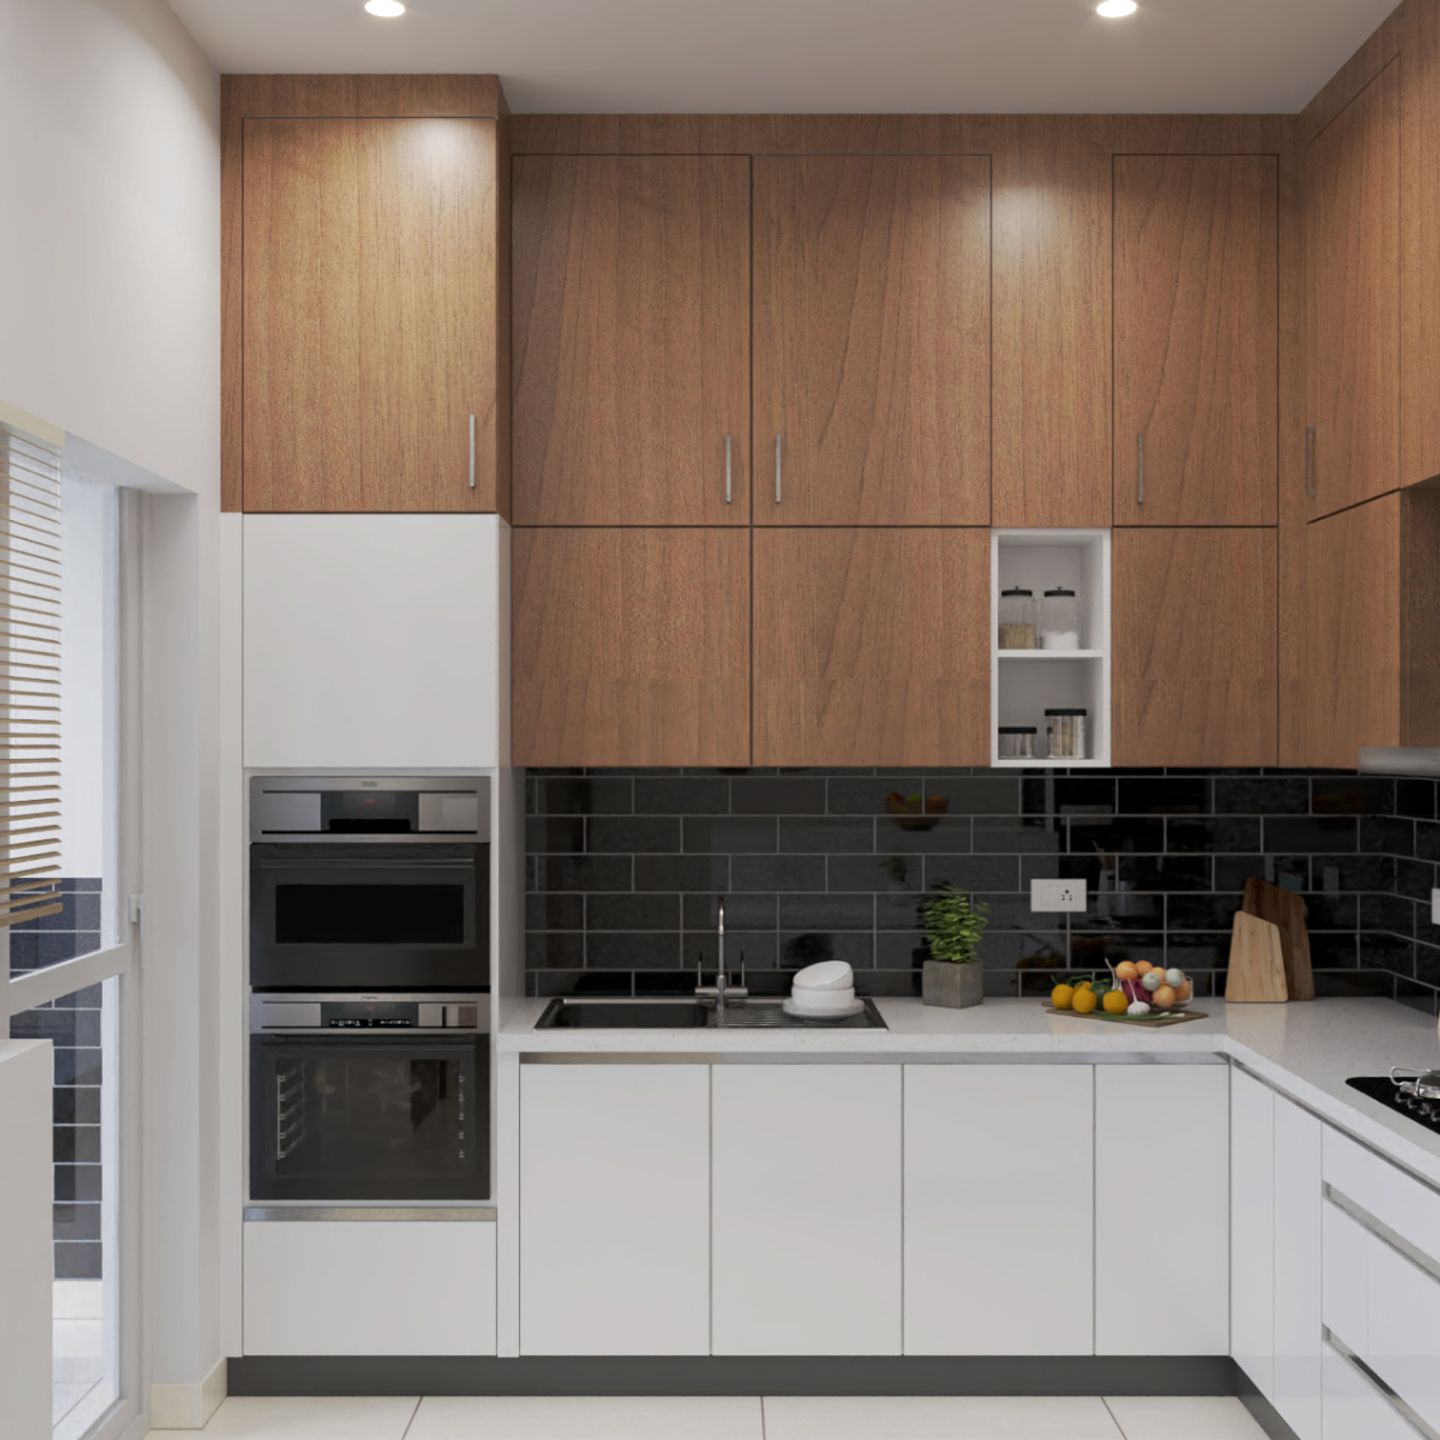 Modern U-Shaped Kitchen Design With Black Brick-Patterned Backsplash Tiles